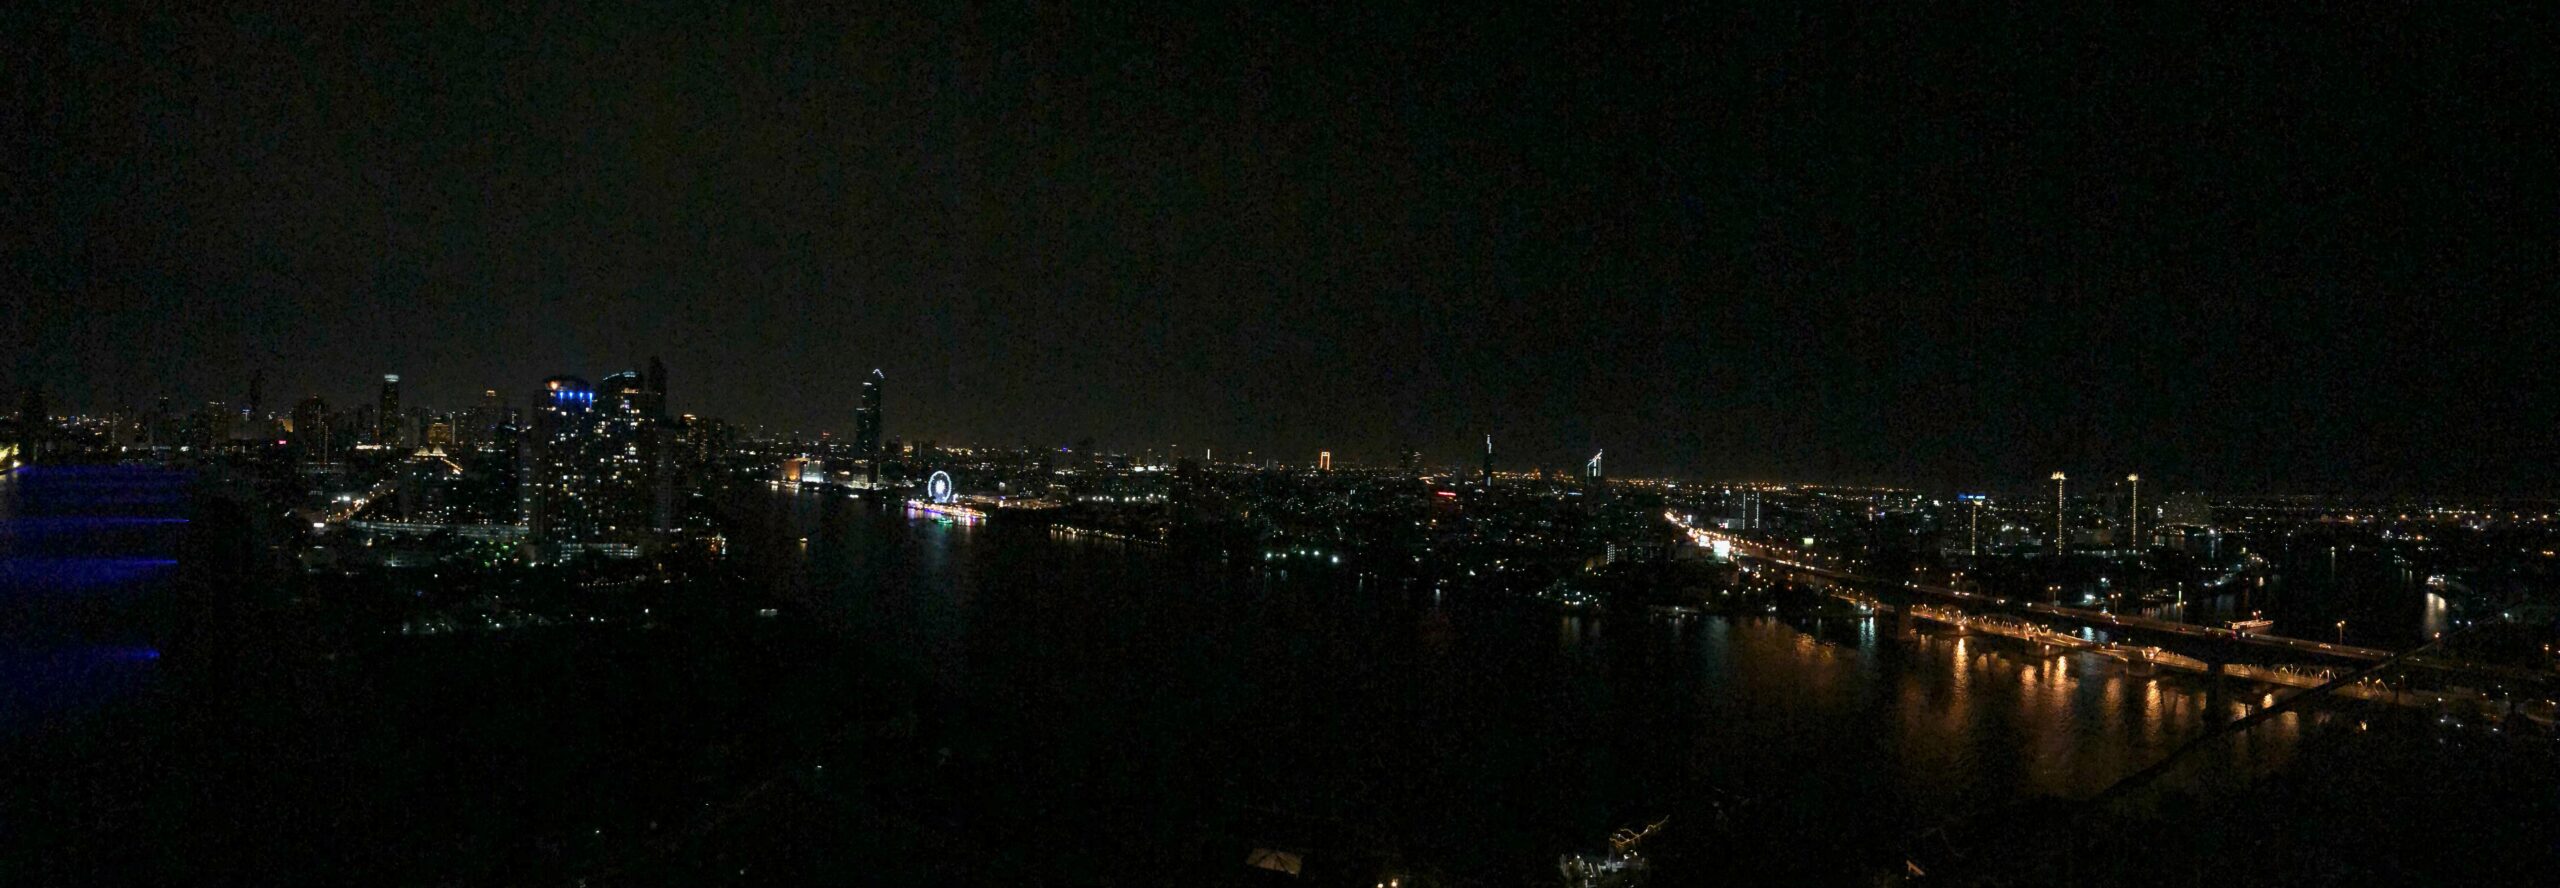 Bild: Skyline von Bangkok bei Nacht, Thailand